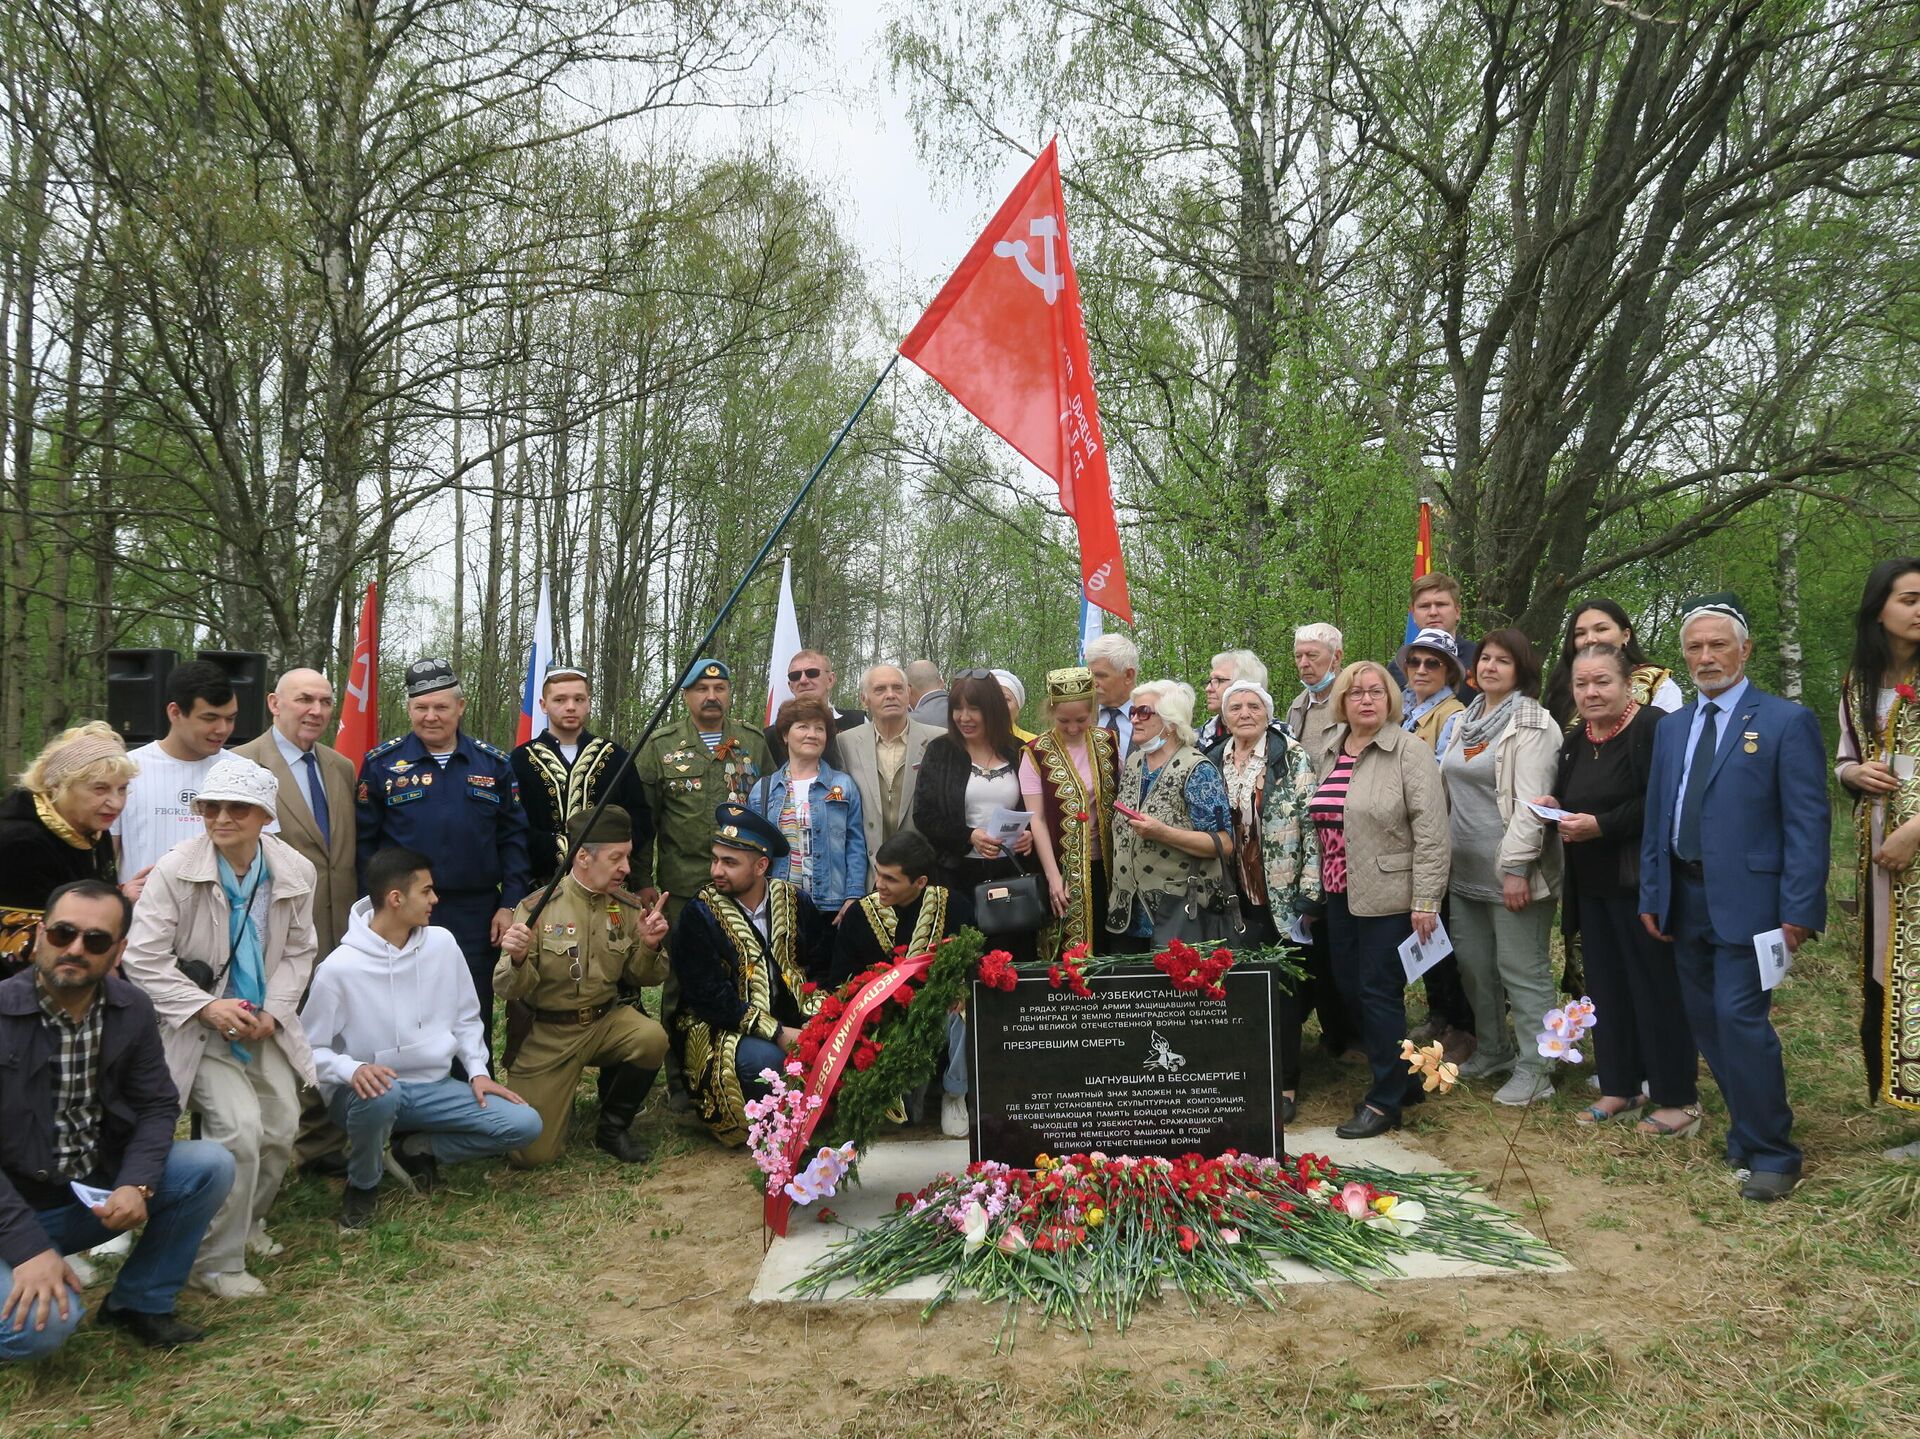 Закладка камня на месте монумента в память о героях-узбекистанцах, защищавших Ленинград в годы ВОВ - Sputnik Узбекистан, 1920, 16.05.2021